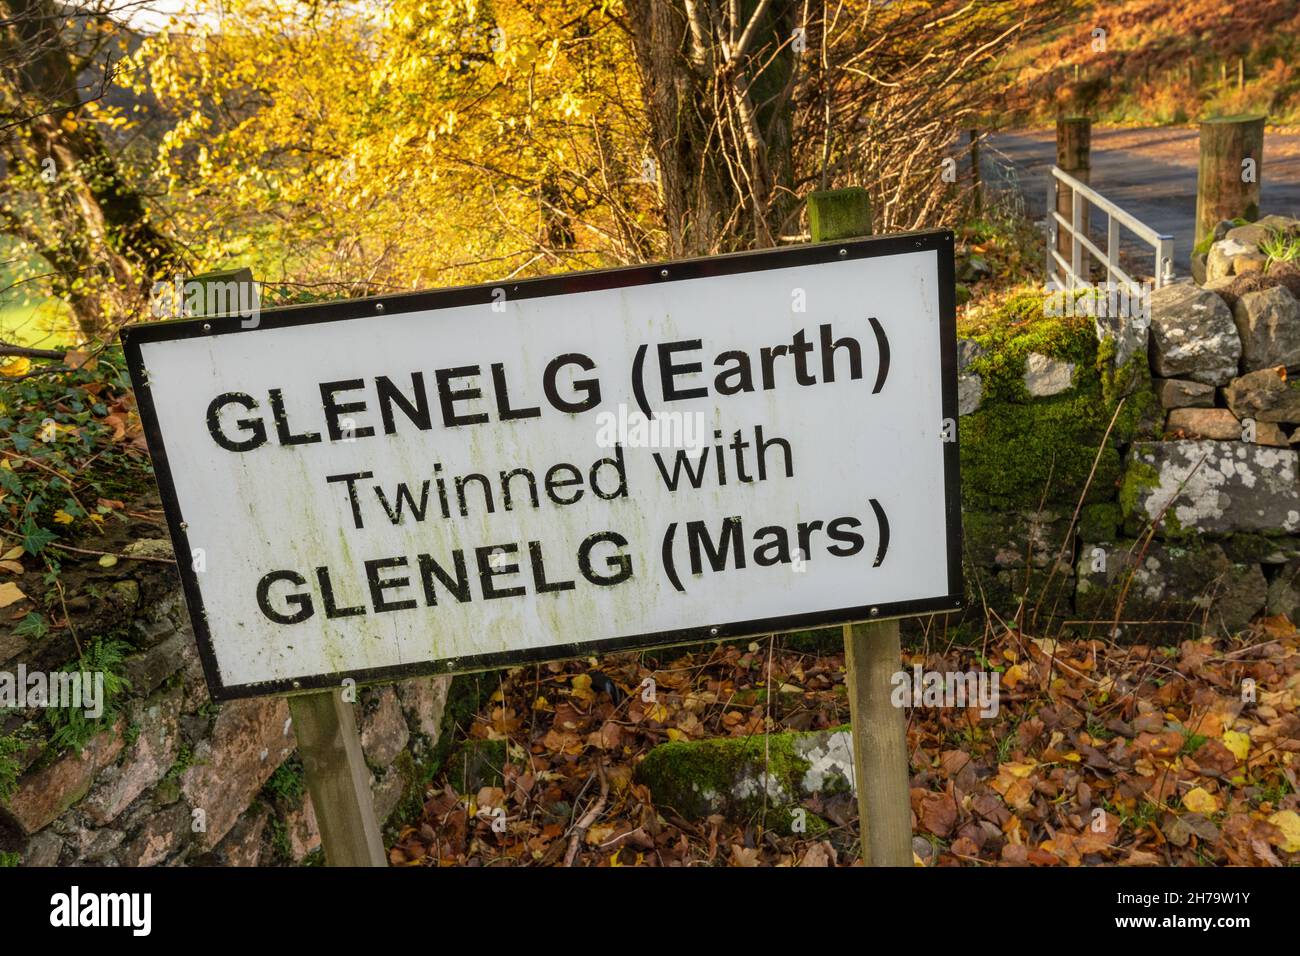 El pueblo escocés de la costa oeste de Glenelg fue hermanado oficialmente con Glenelg, Marte, el 20 de octubre de 2012. Señal de carretera visible al acercarse a Glenelg. Foto de stock